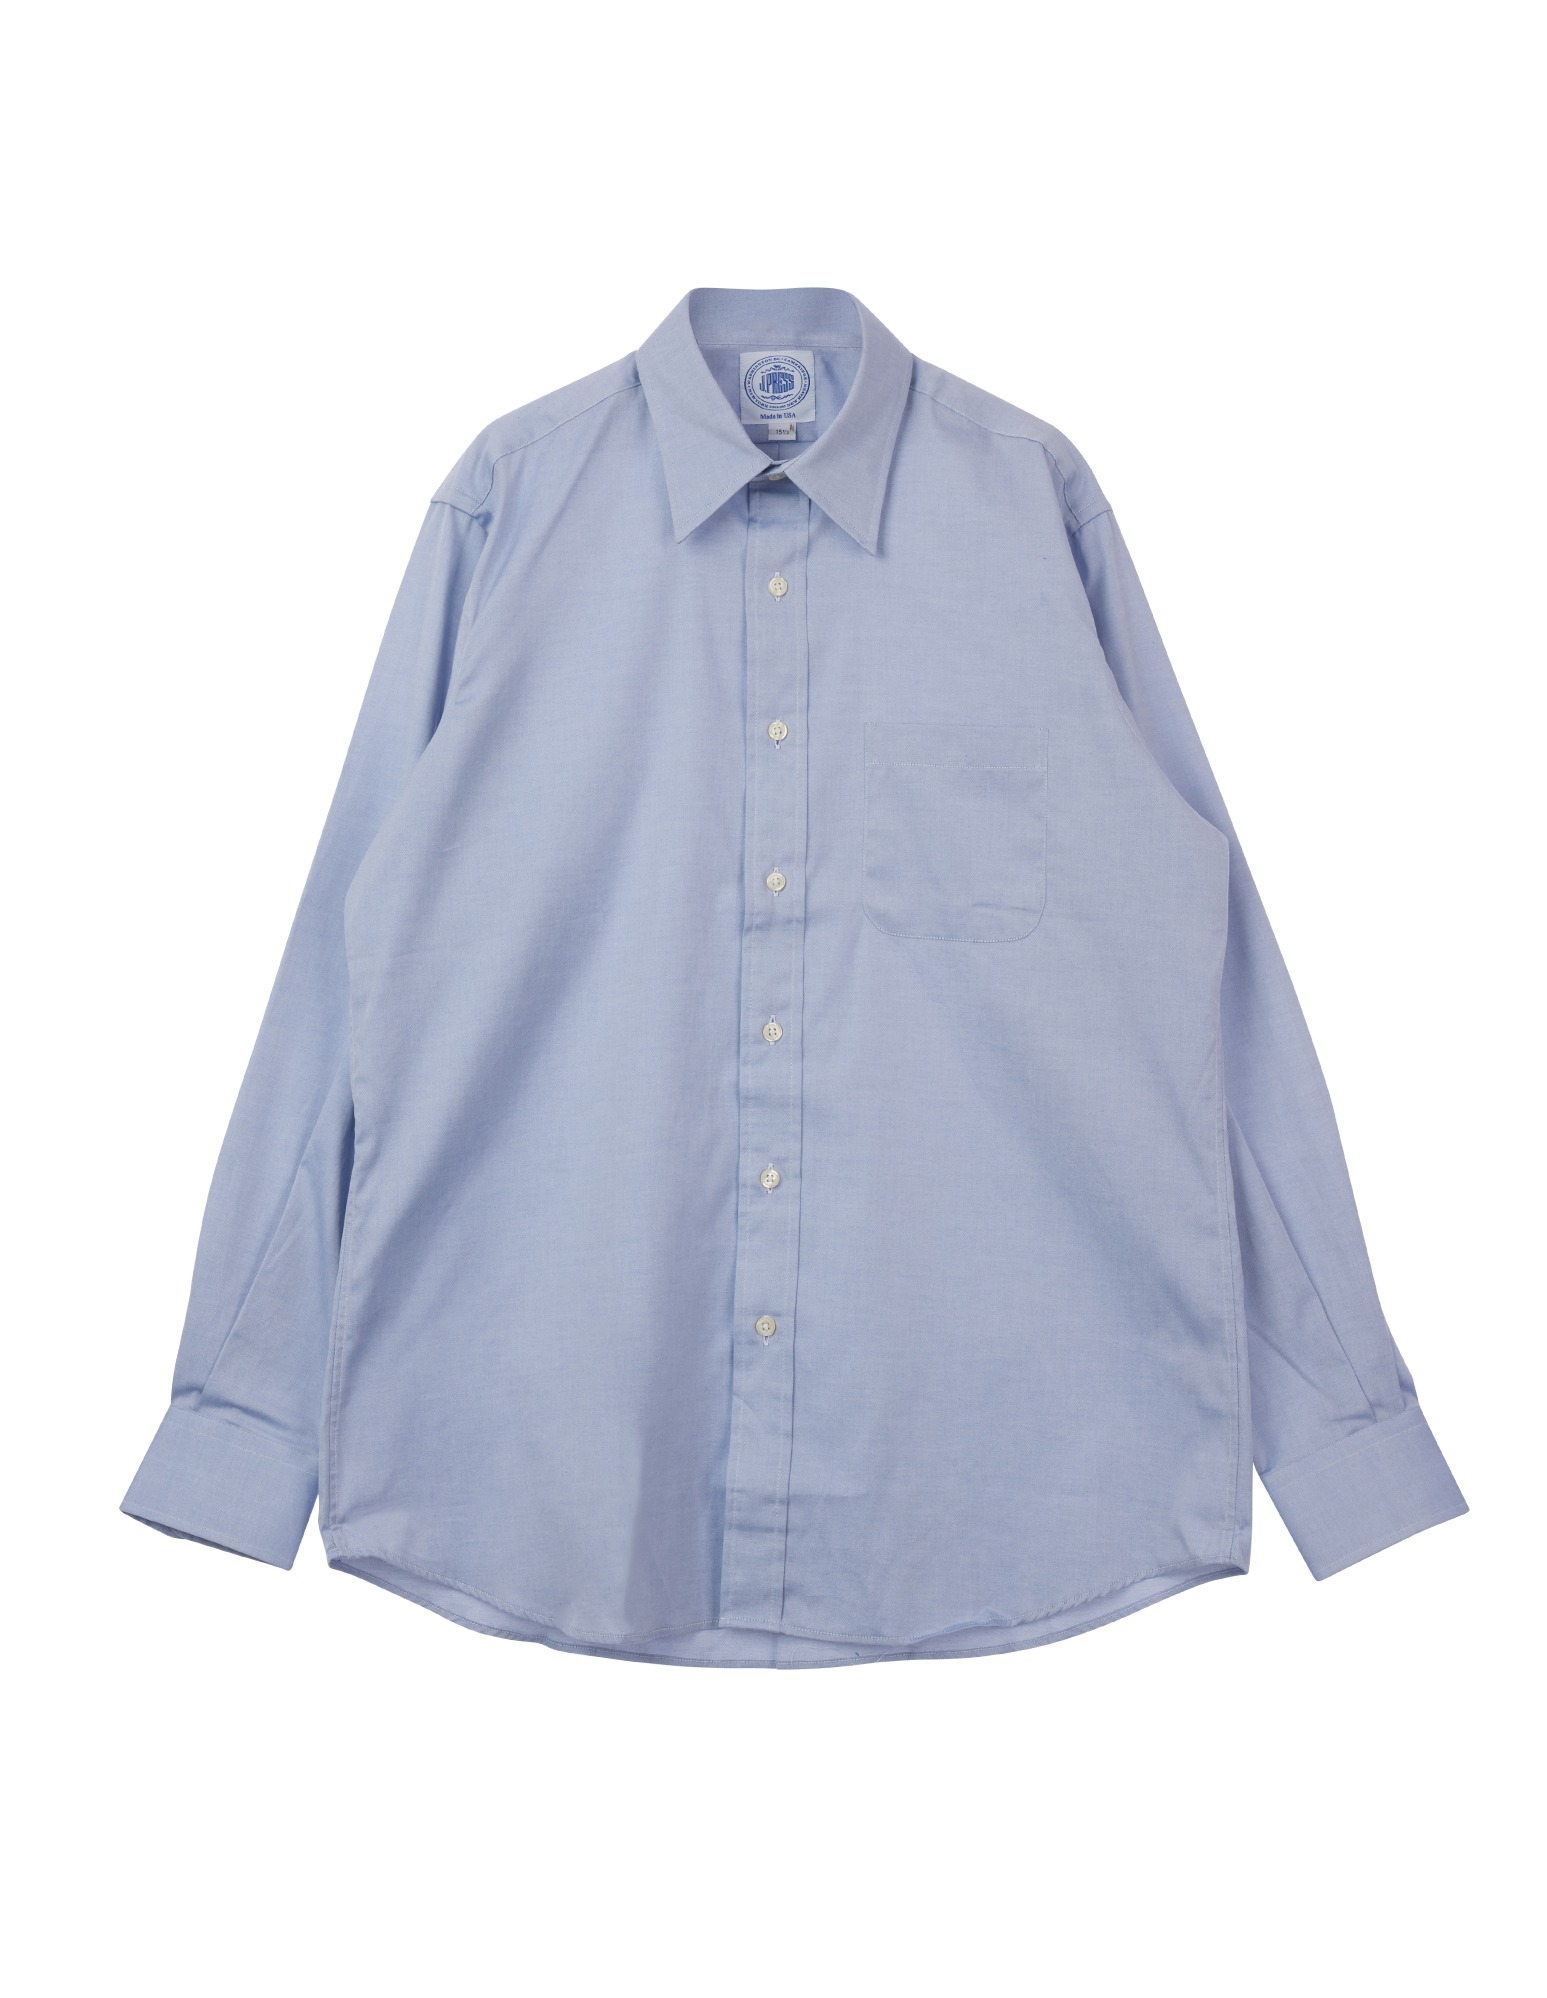 Pinpoint Collar Dress Shirt (Blue)